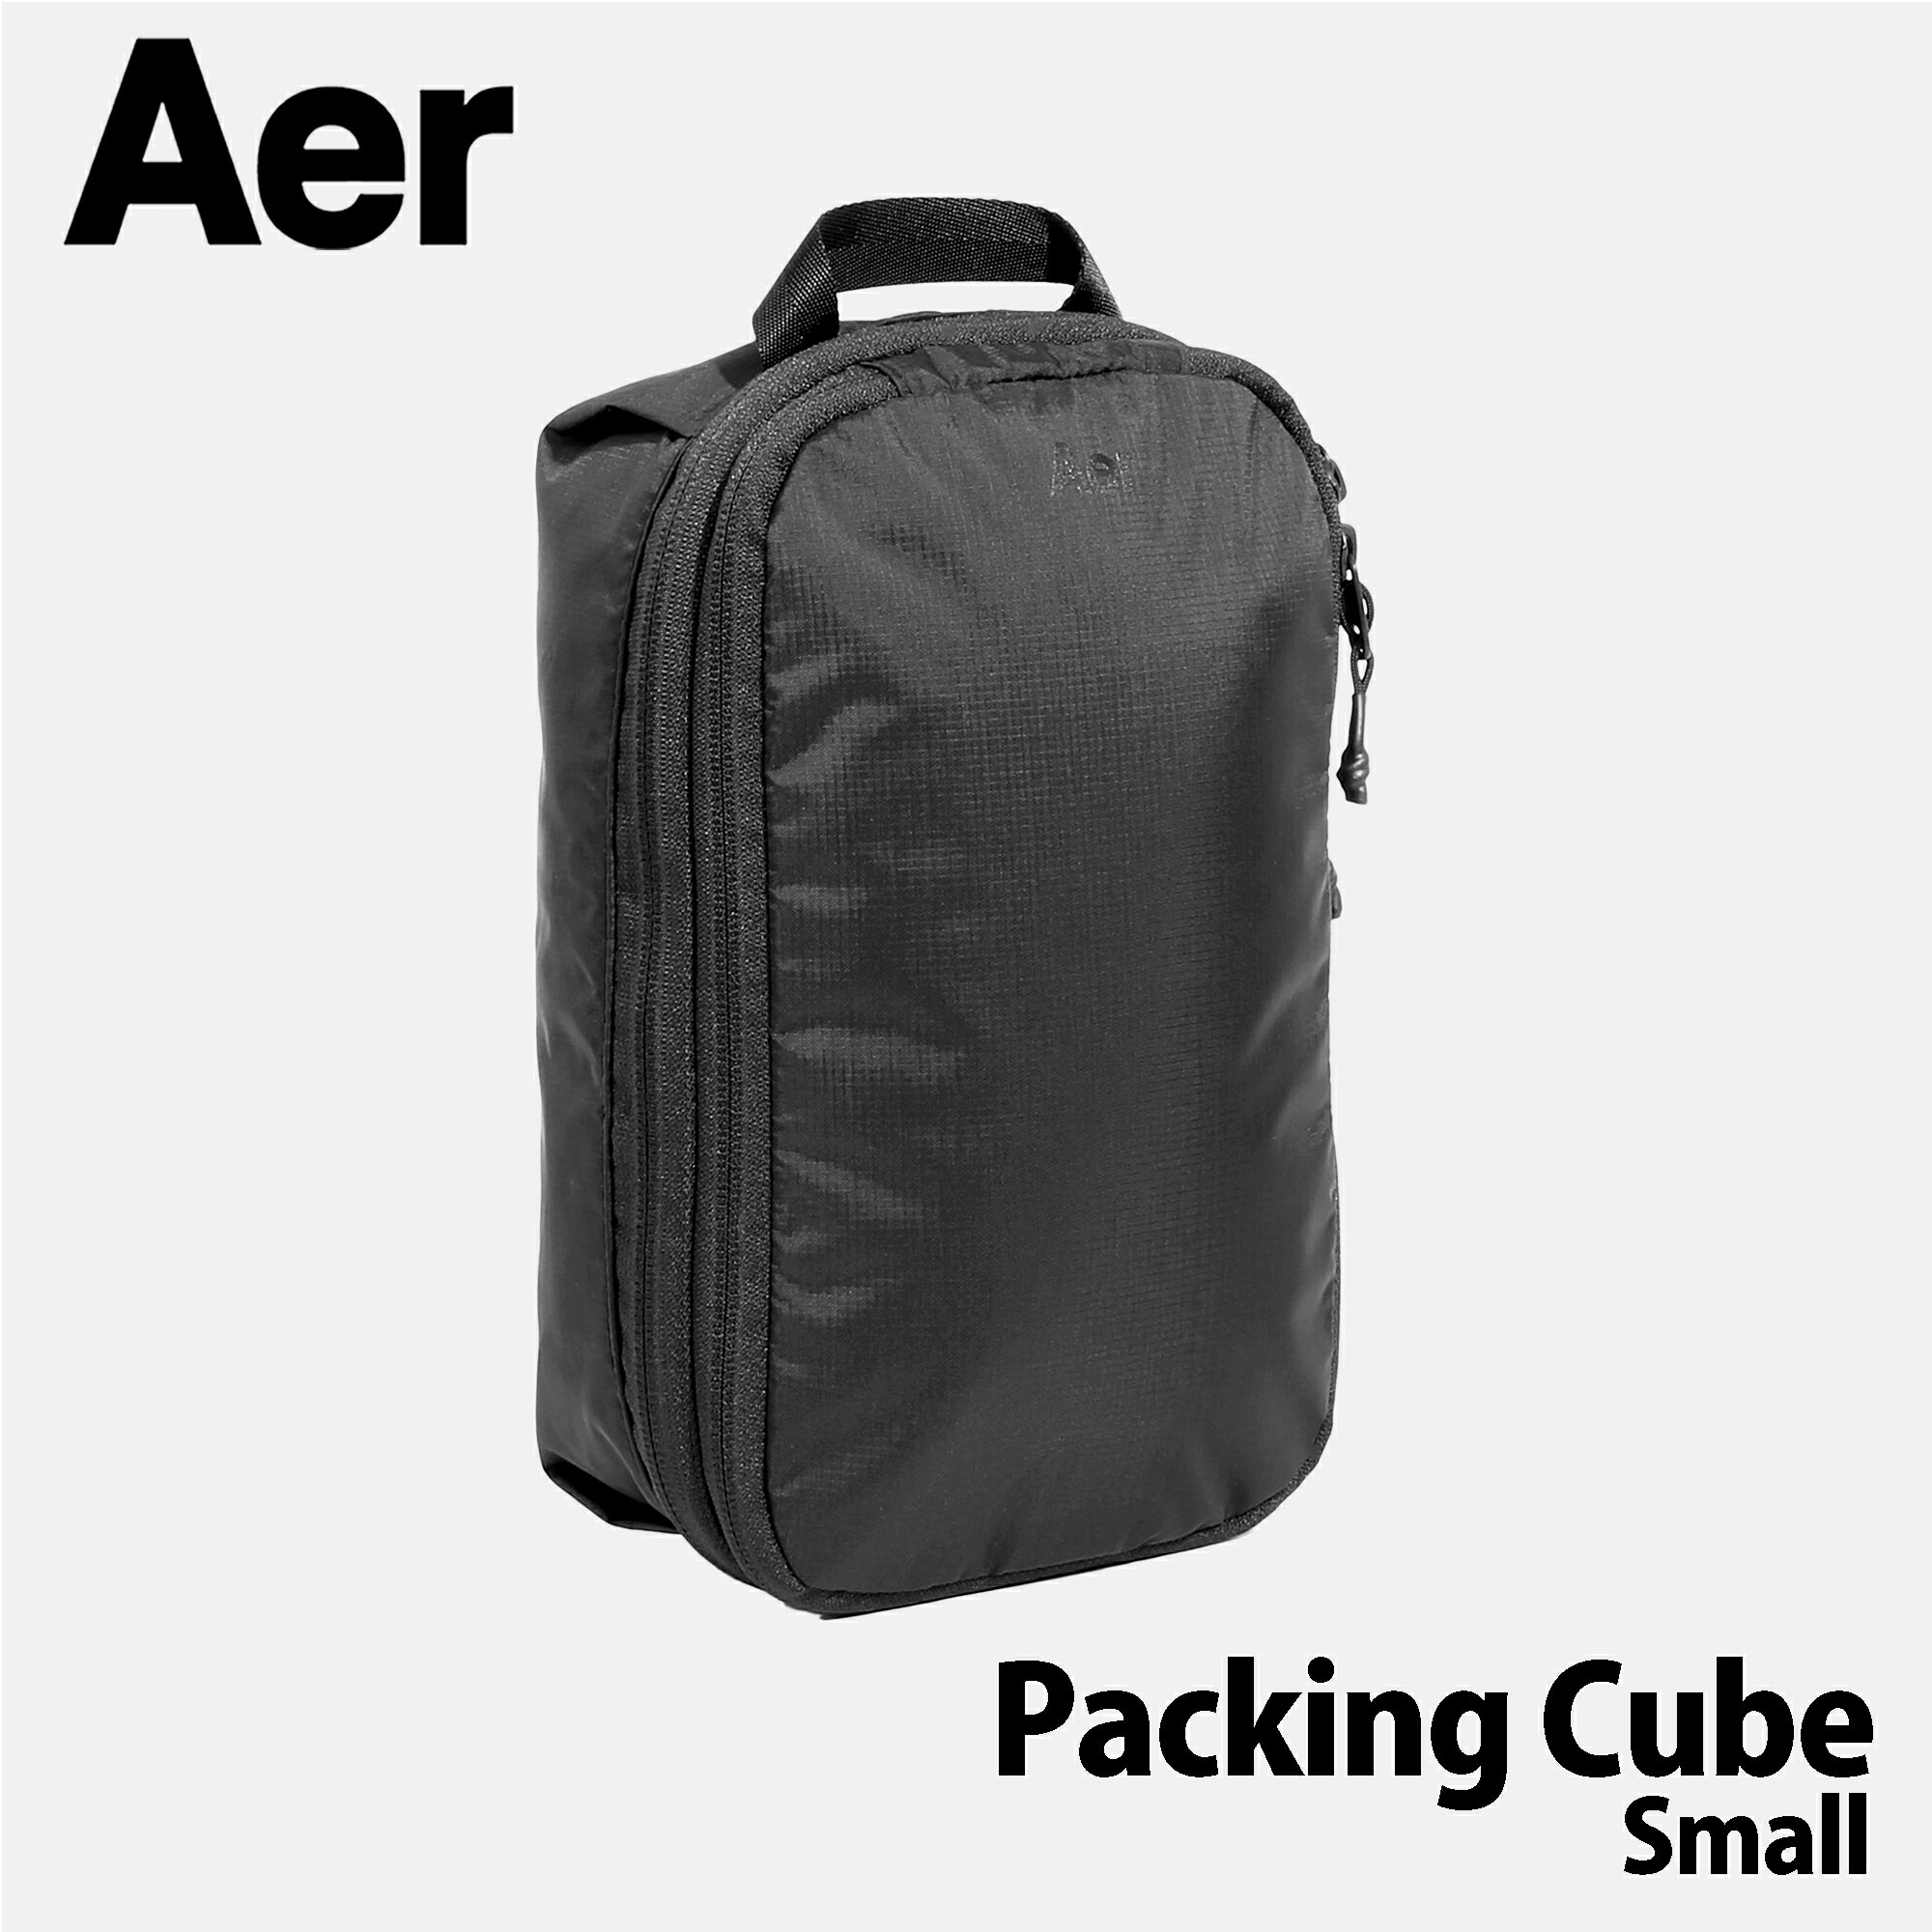 Aer（エアー）Packing Cube Small/パッキングキューブ AER-21053 ブラック リップストップナイロン カバン バッグ ビジネス 通学 通勤 トラベル 旅行 出張 キャンプ アウトドア 新生活 春夏【正規品】